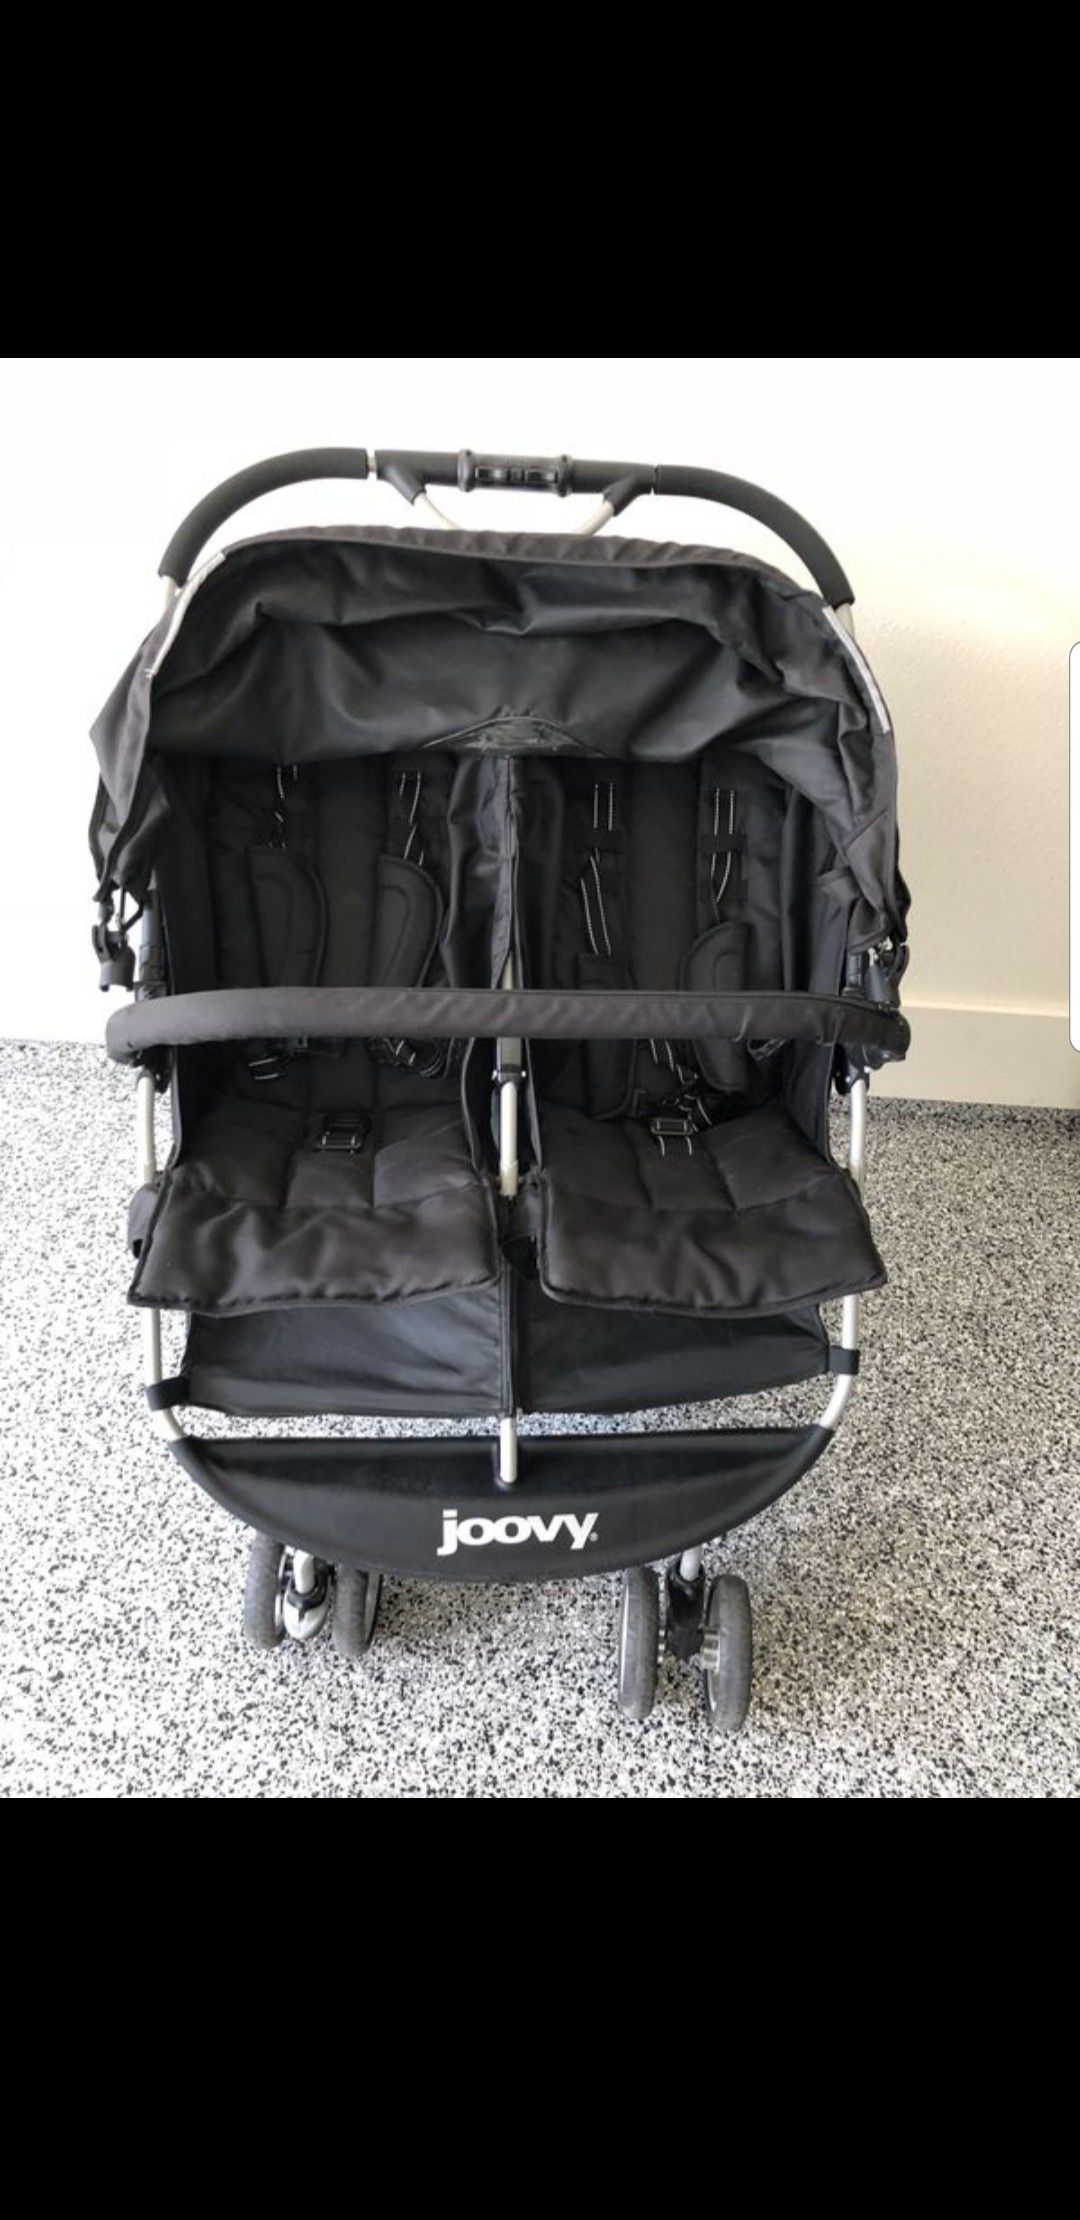 Joovy Twin/Double Stroller